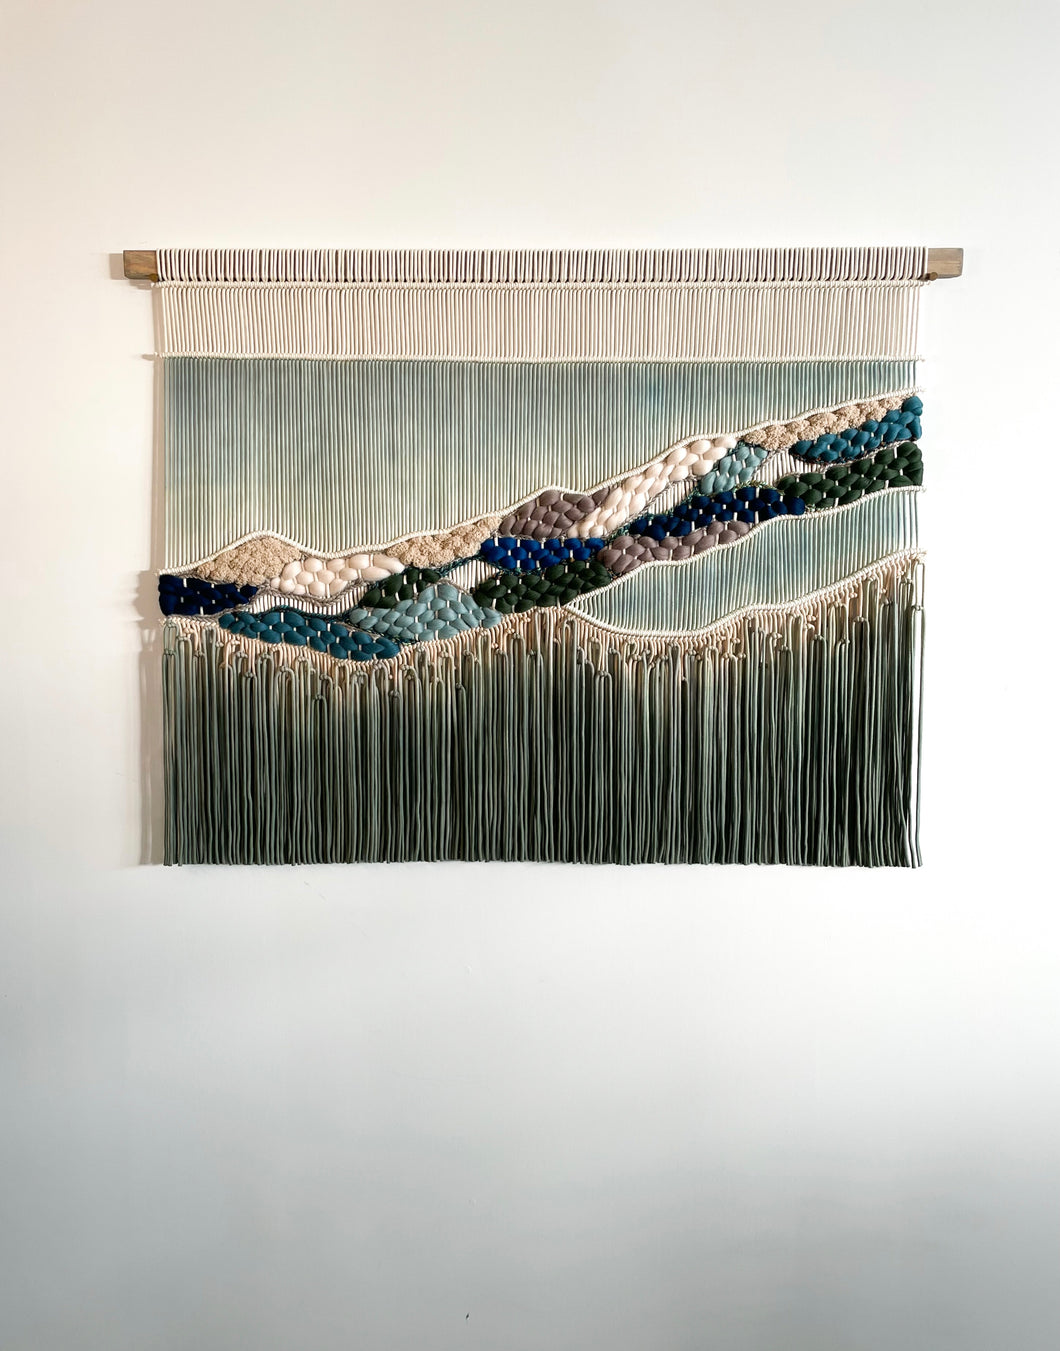 ‘Kettle Cove’ Oceanic Fiber Art